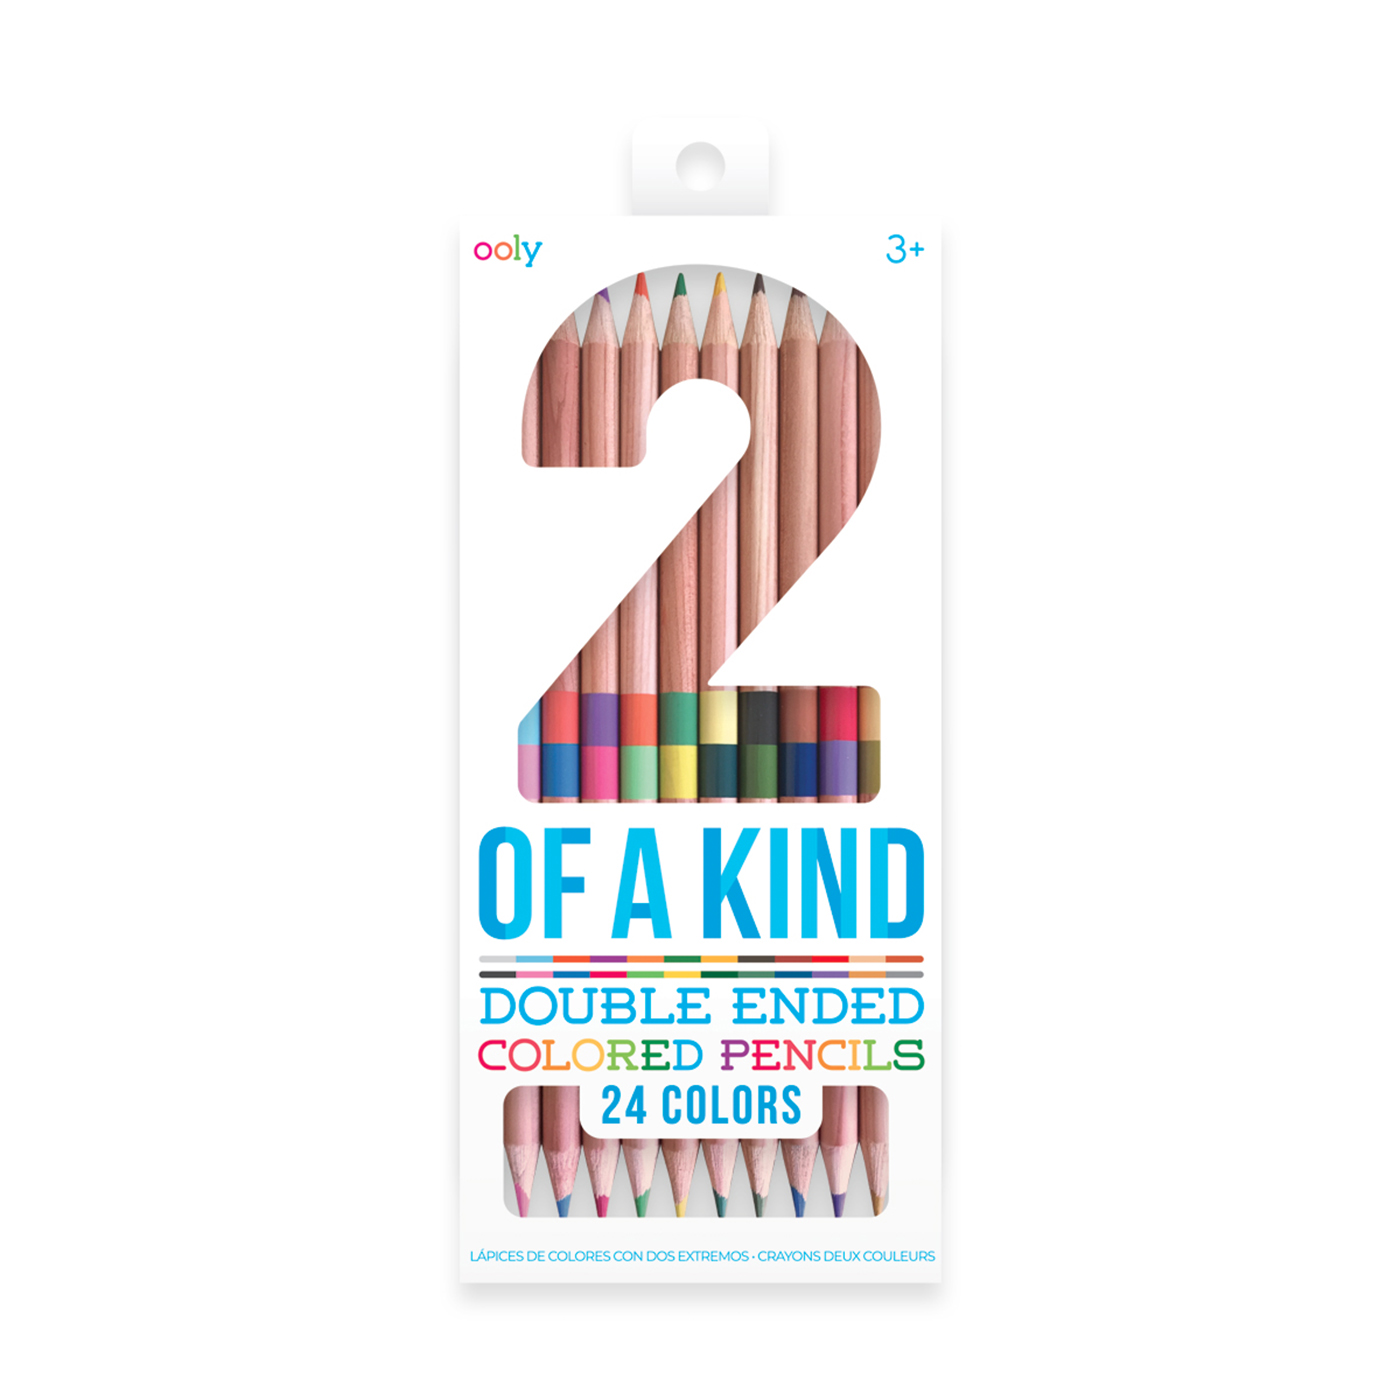  Ooly 2 Of a Kind Çift Uçlu 24’lü Renkli Kurşun Kalem